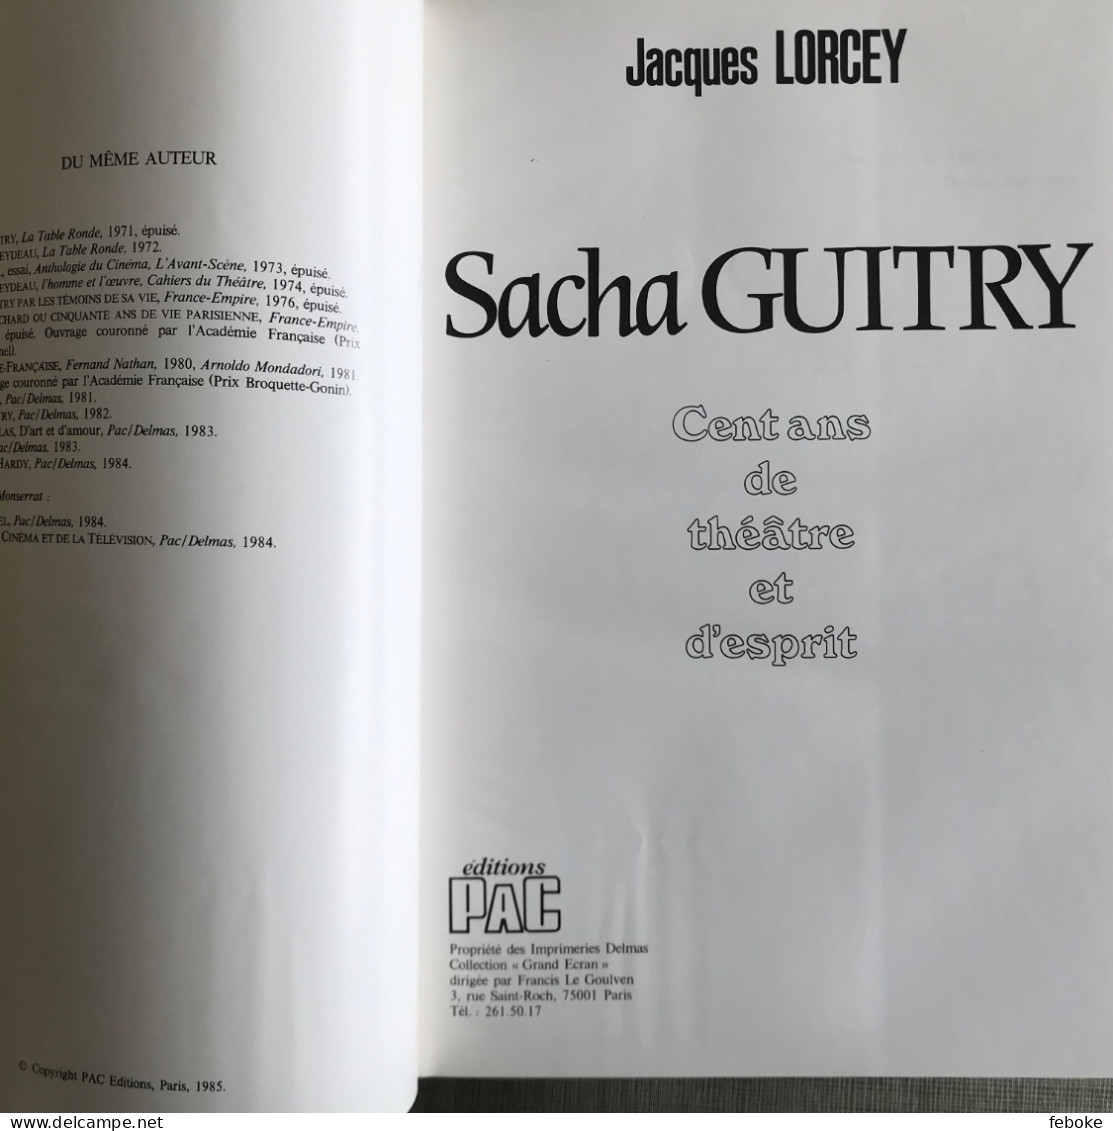 SACHA GUITRY 100 ANS DE THEATRE ET D'ESPRIT DE JACQUES LORCEY PAC EDITIONS PARIS 1985 - Französische Autoren